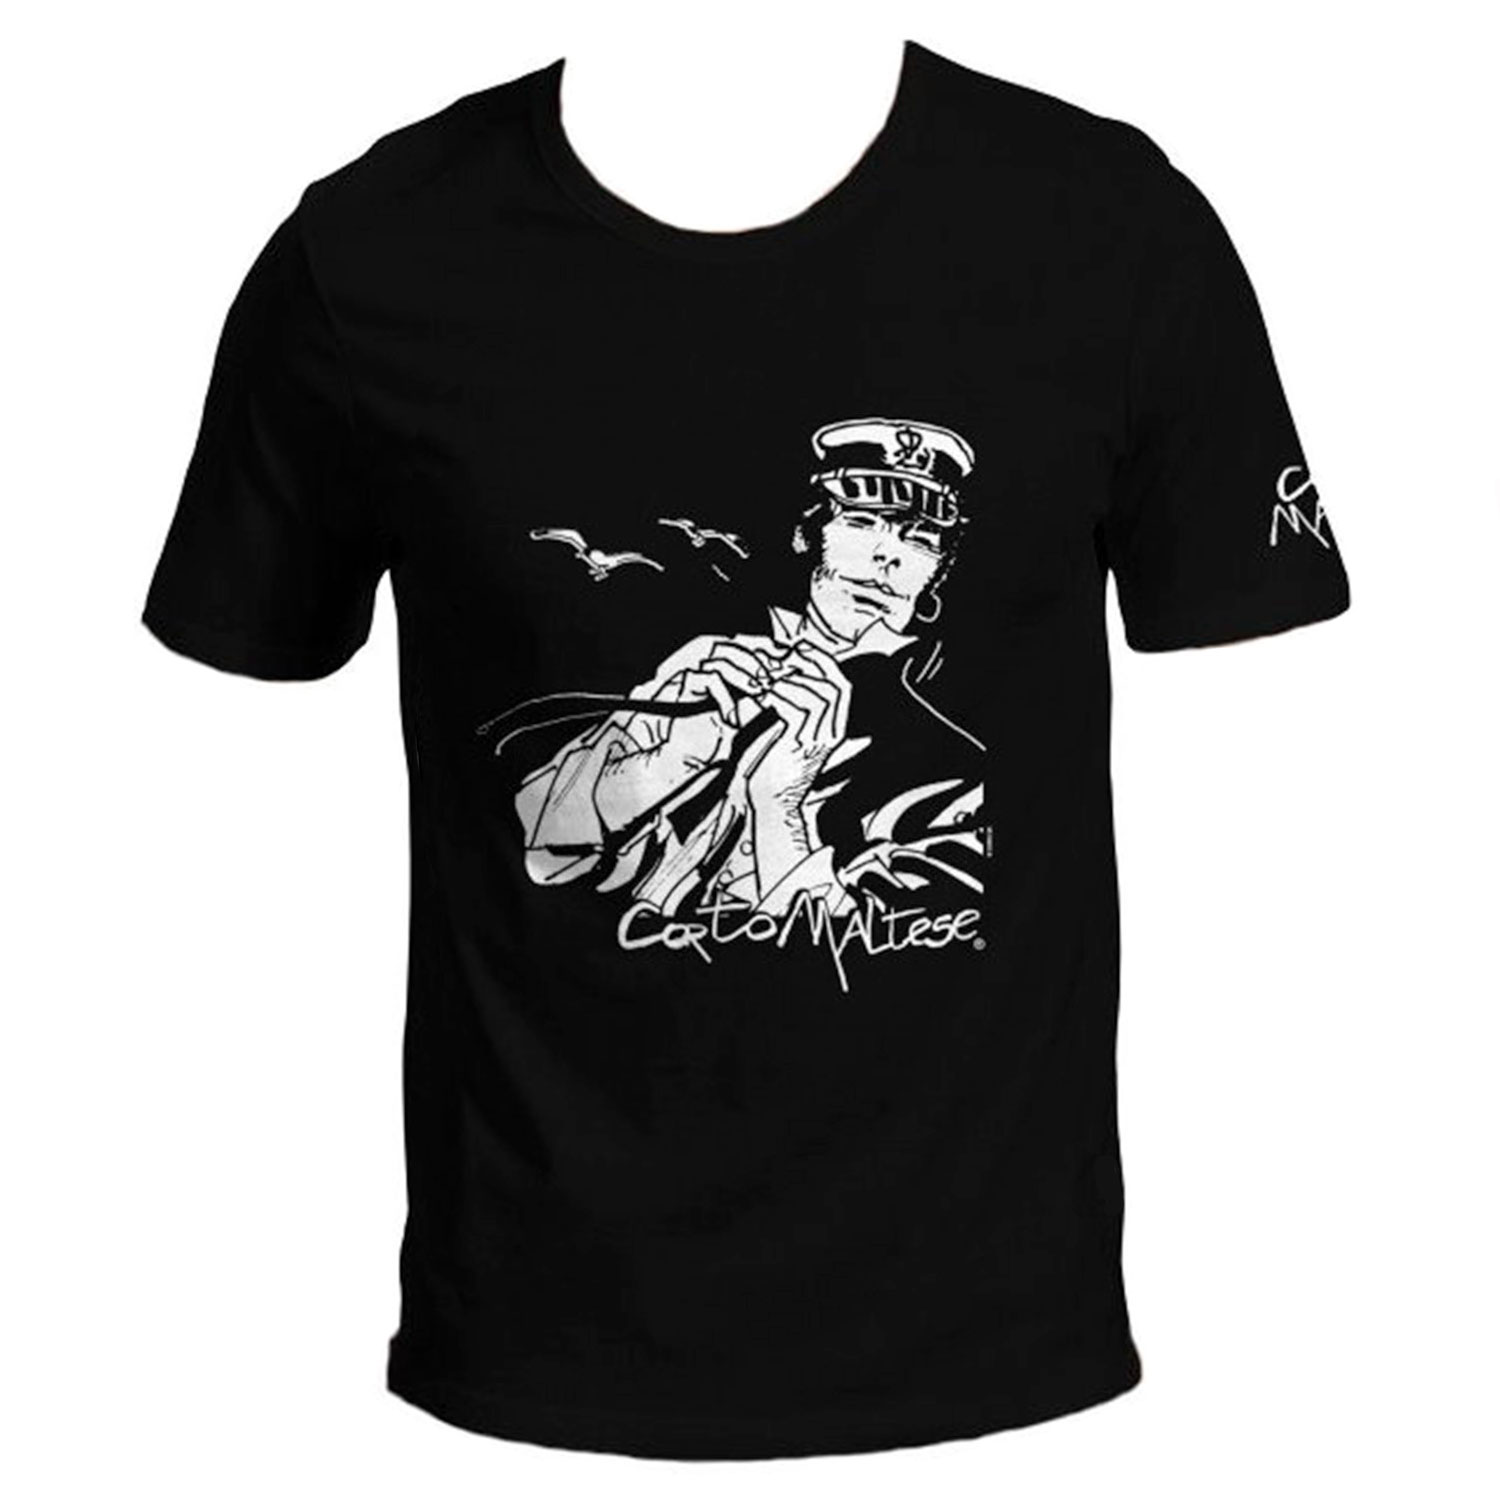 Hugo Pratt T-shirt : Corto Maltese in the wind - Black - Size S